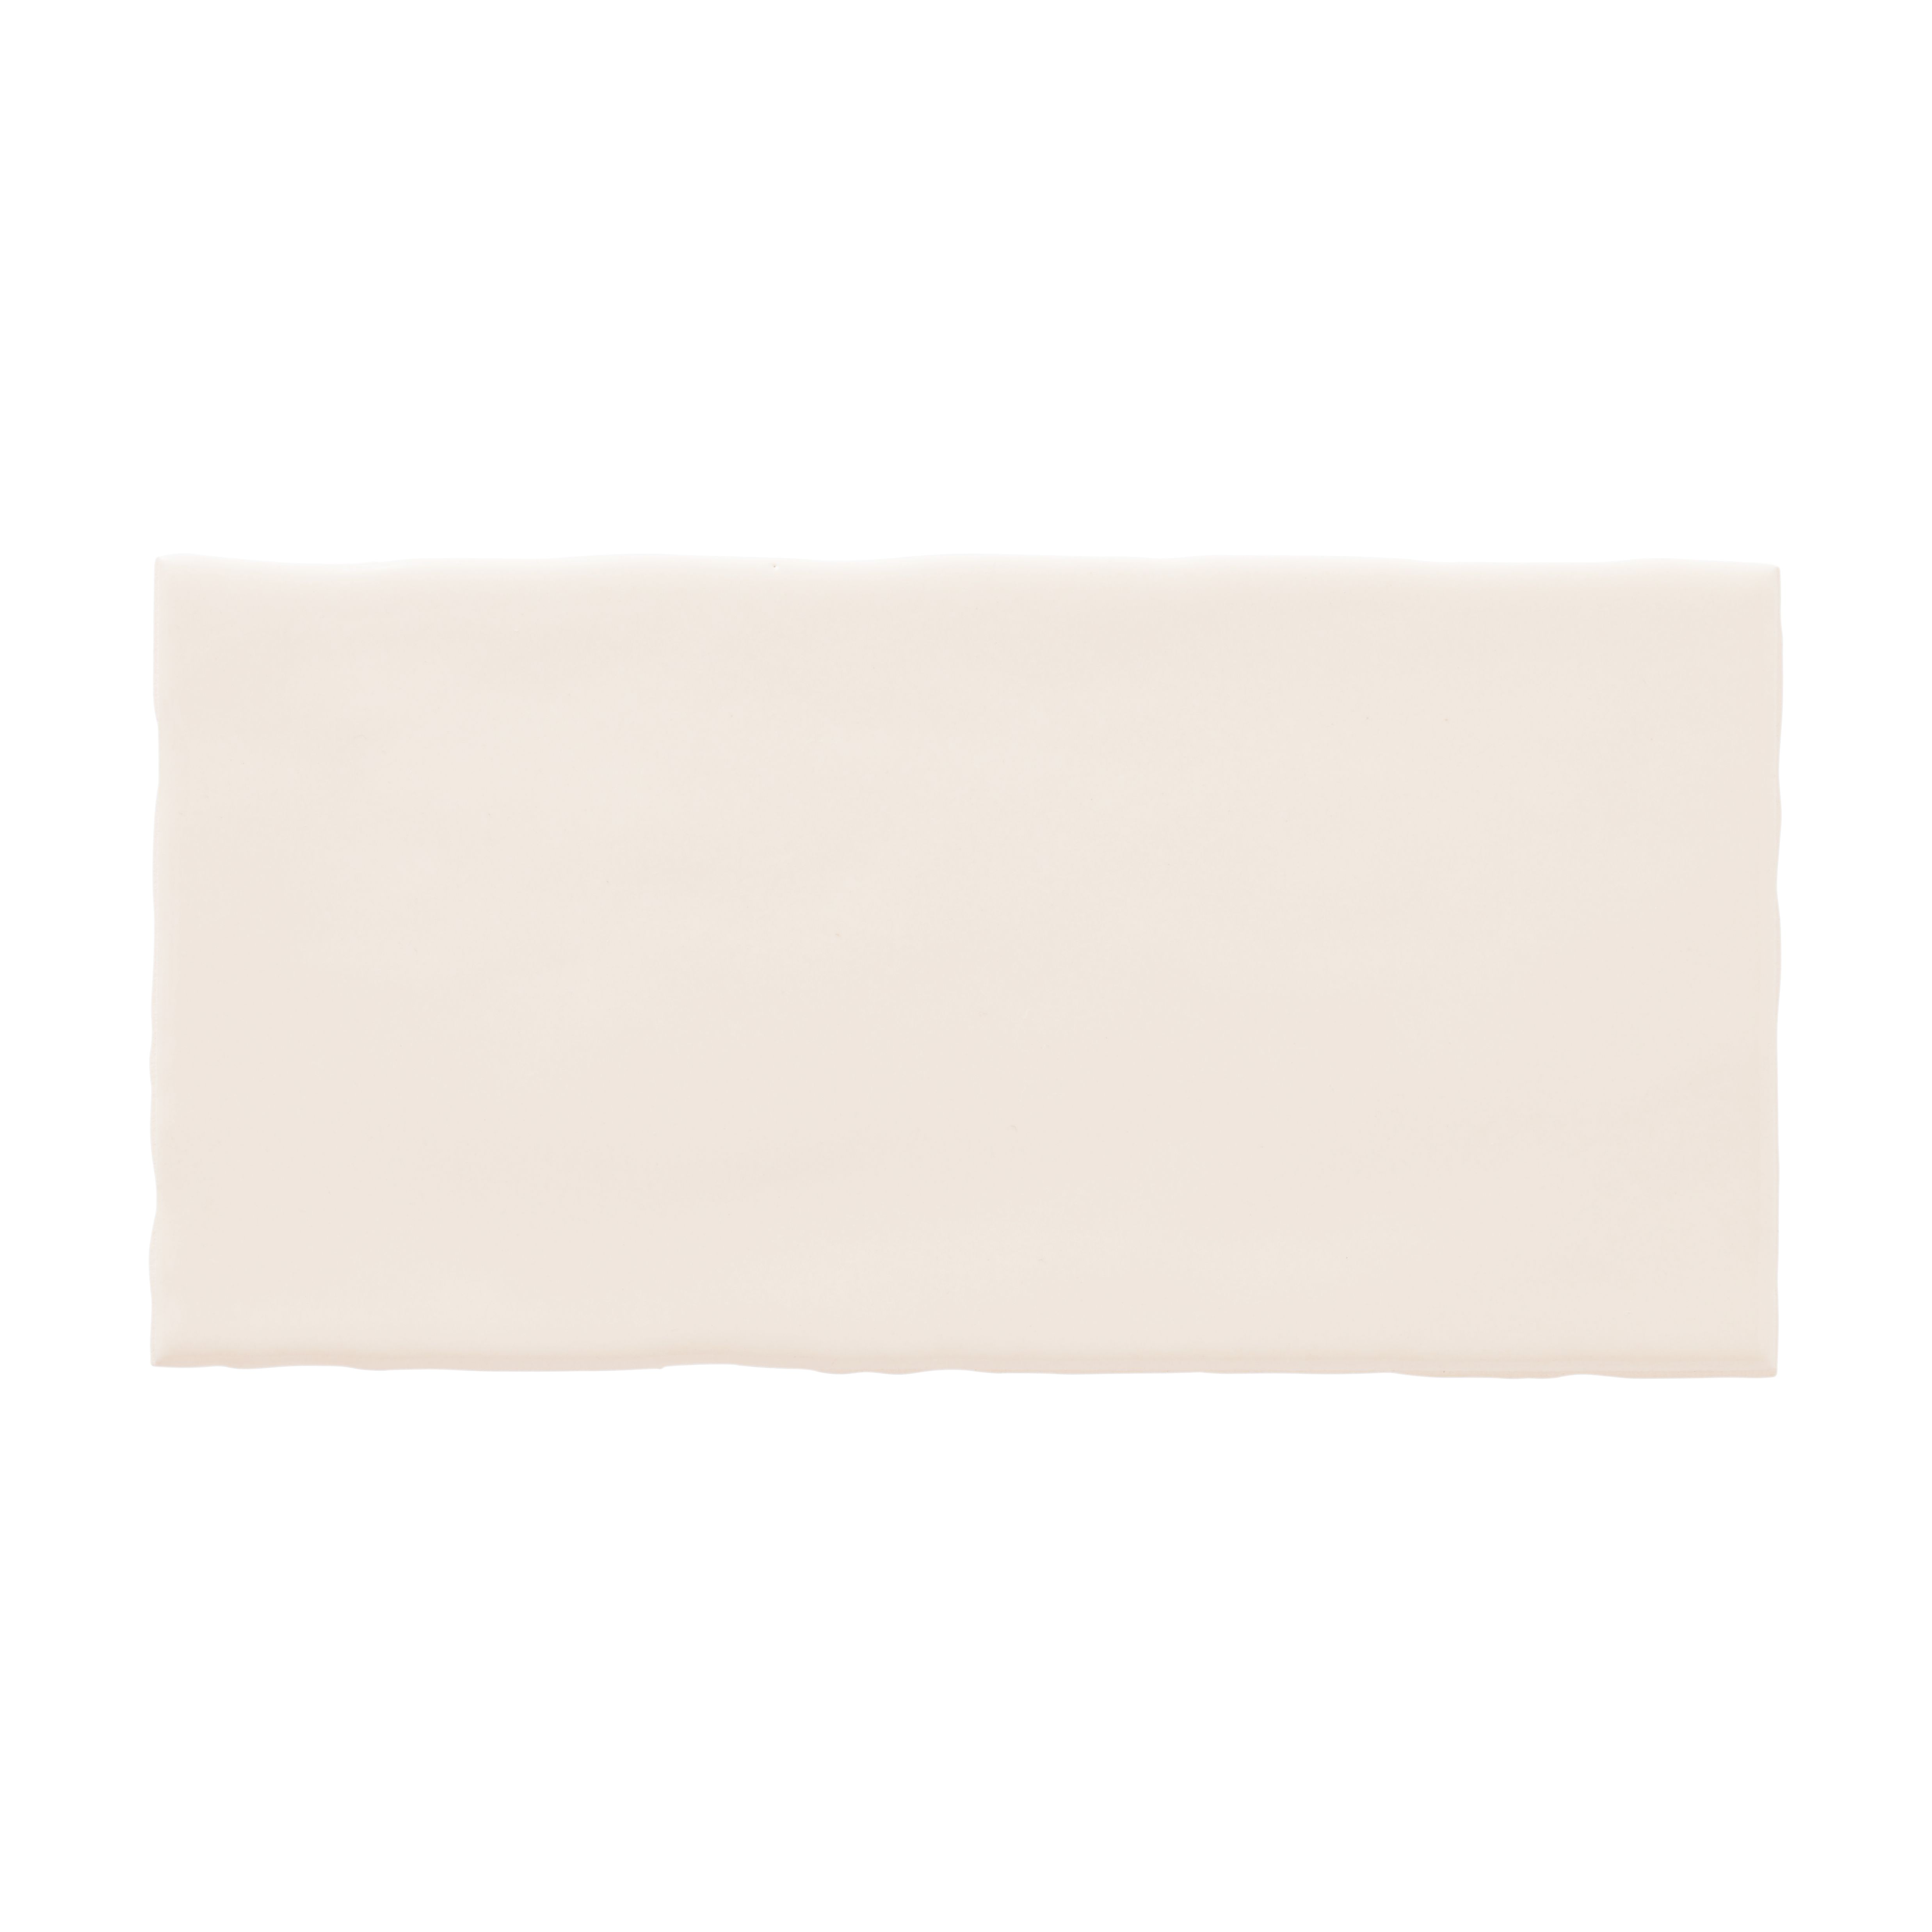 Vernisse Off white Gloss Plain Ceramic Wall Tile, Pack of 80, (L)150mm (W)75.4mm